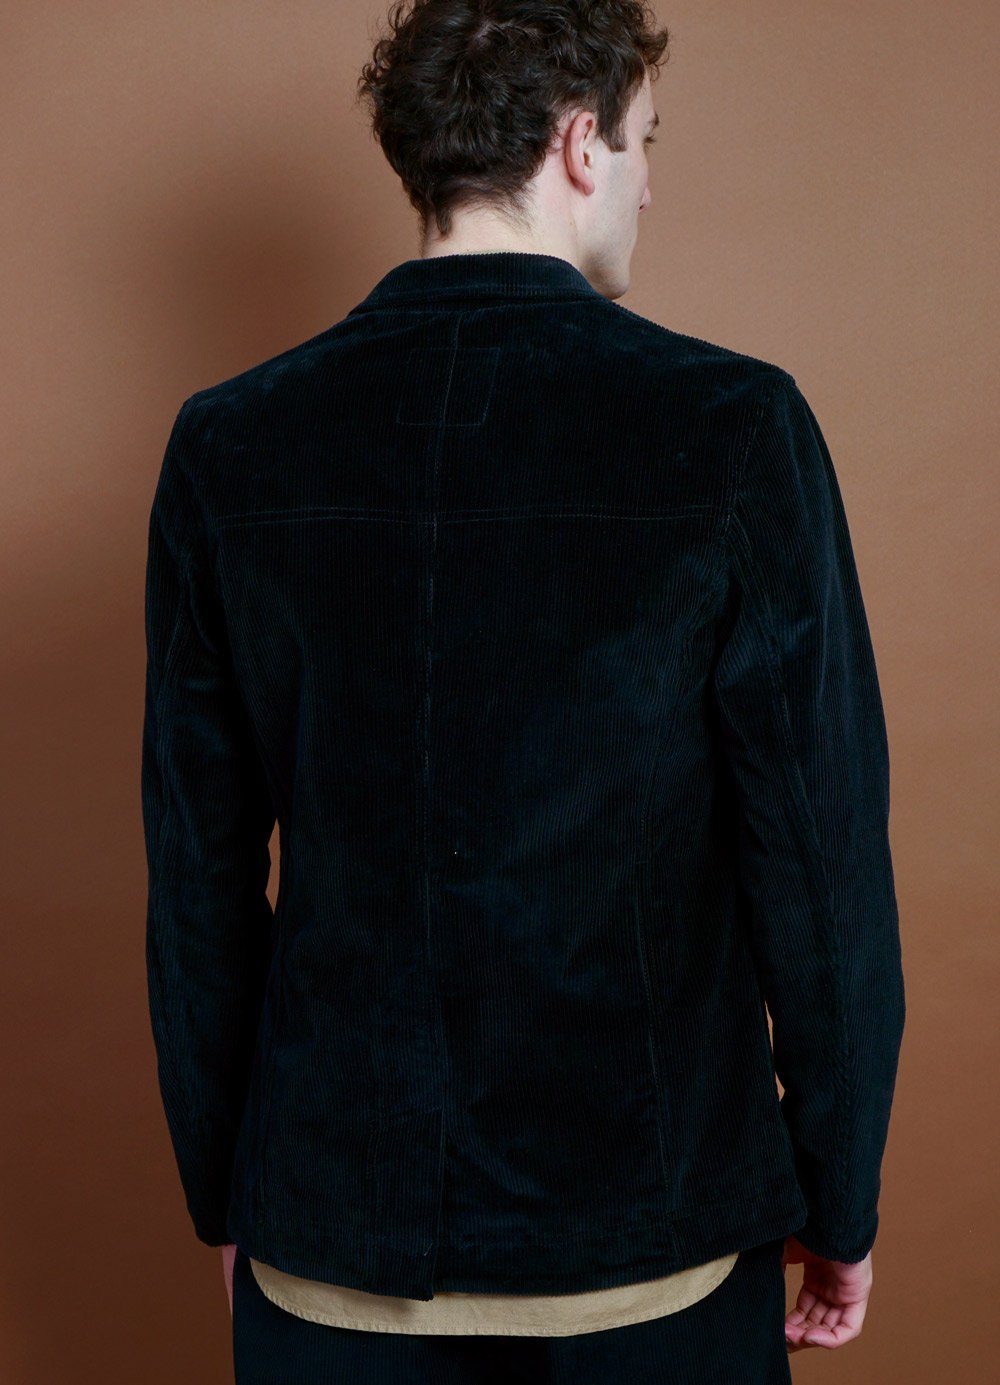 HANSEN Garments - NICOLAI | Informal Four Button Blazer | Black - HANSEN Garments